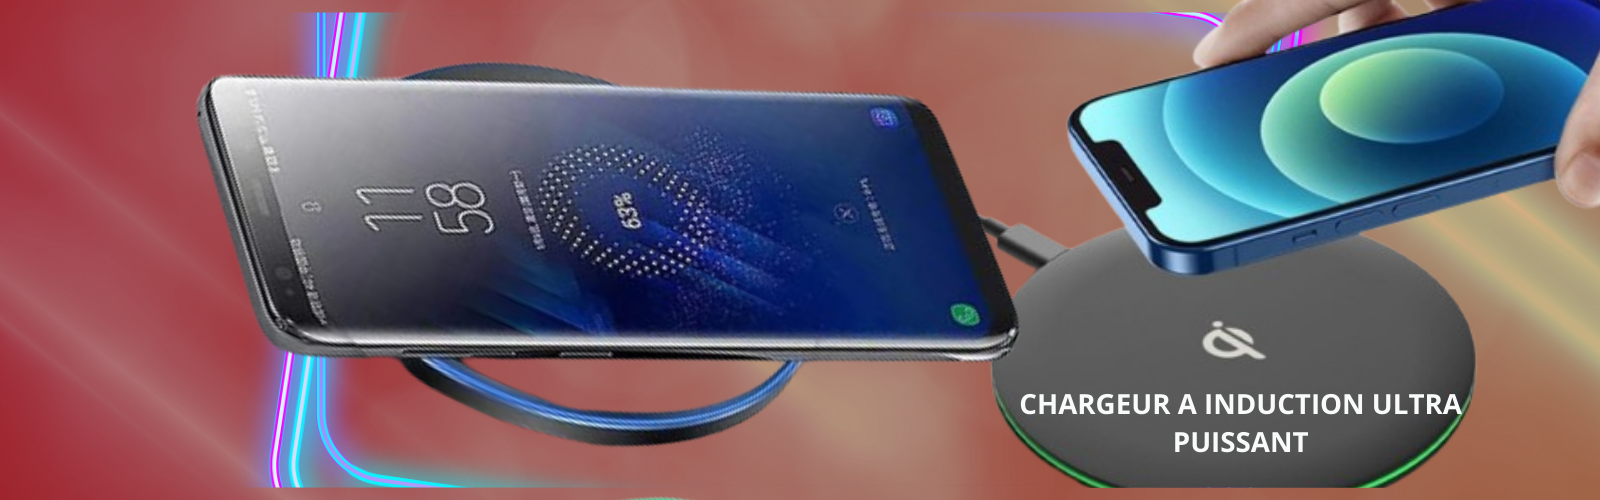 Chargeur de téléphone à induction - Recharge sans fil rapide pour iPhone et Samsung Galaxy. Technologie Qi, charge sans fil efficace pour smartphones. Découvrez notre sélection de chargeurs à induction dès maintenant 